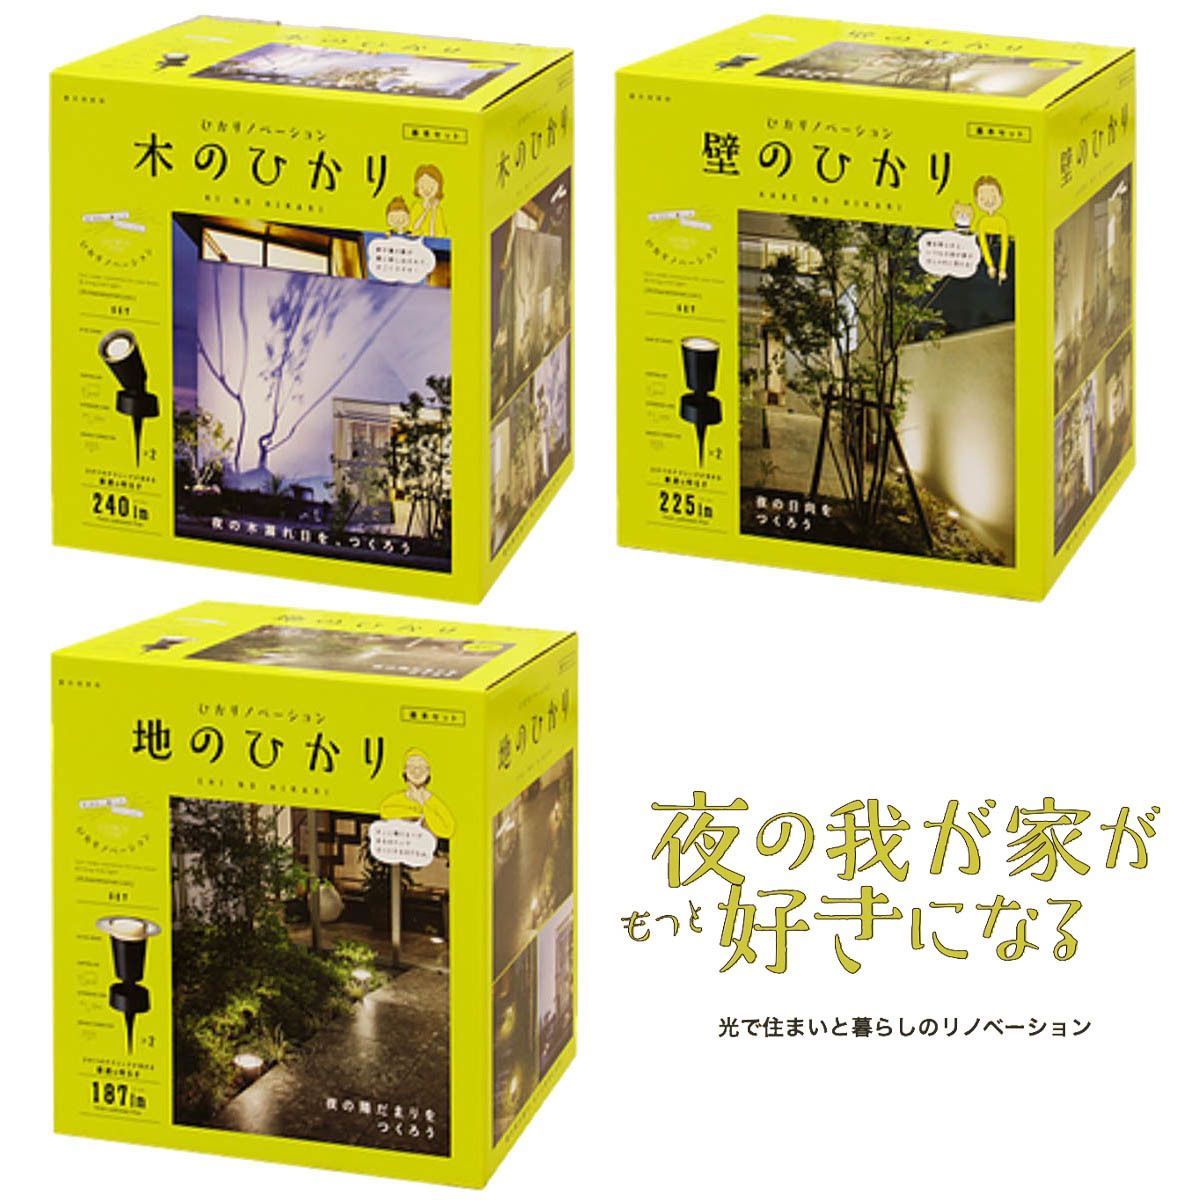 タカショー ひかりノベーション ガーデンライト 屋外用 (10) F- Shop (土日祝は出荷不可) メルカリ